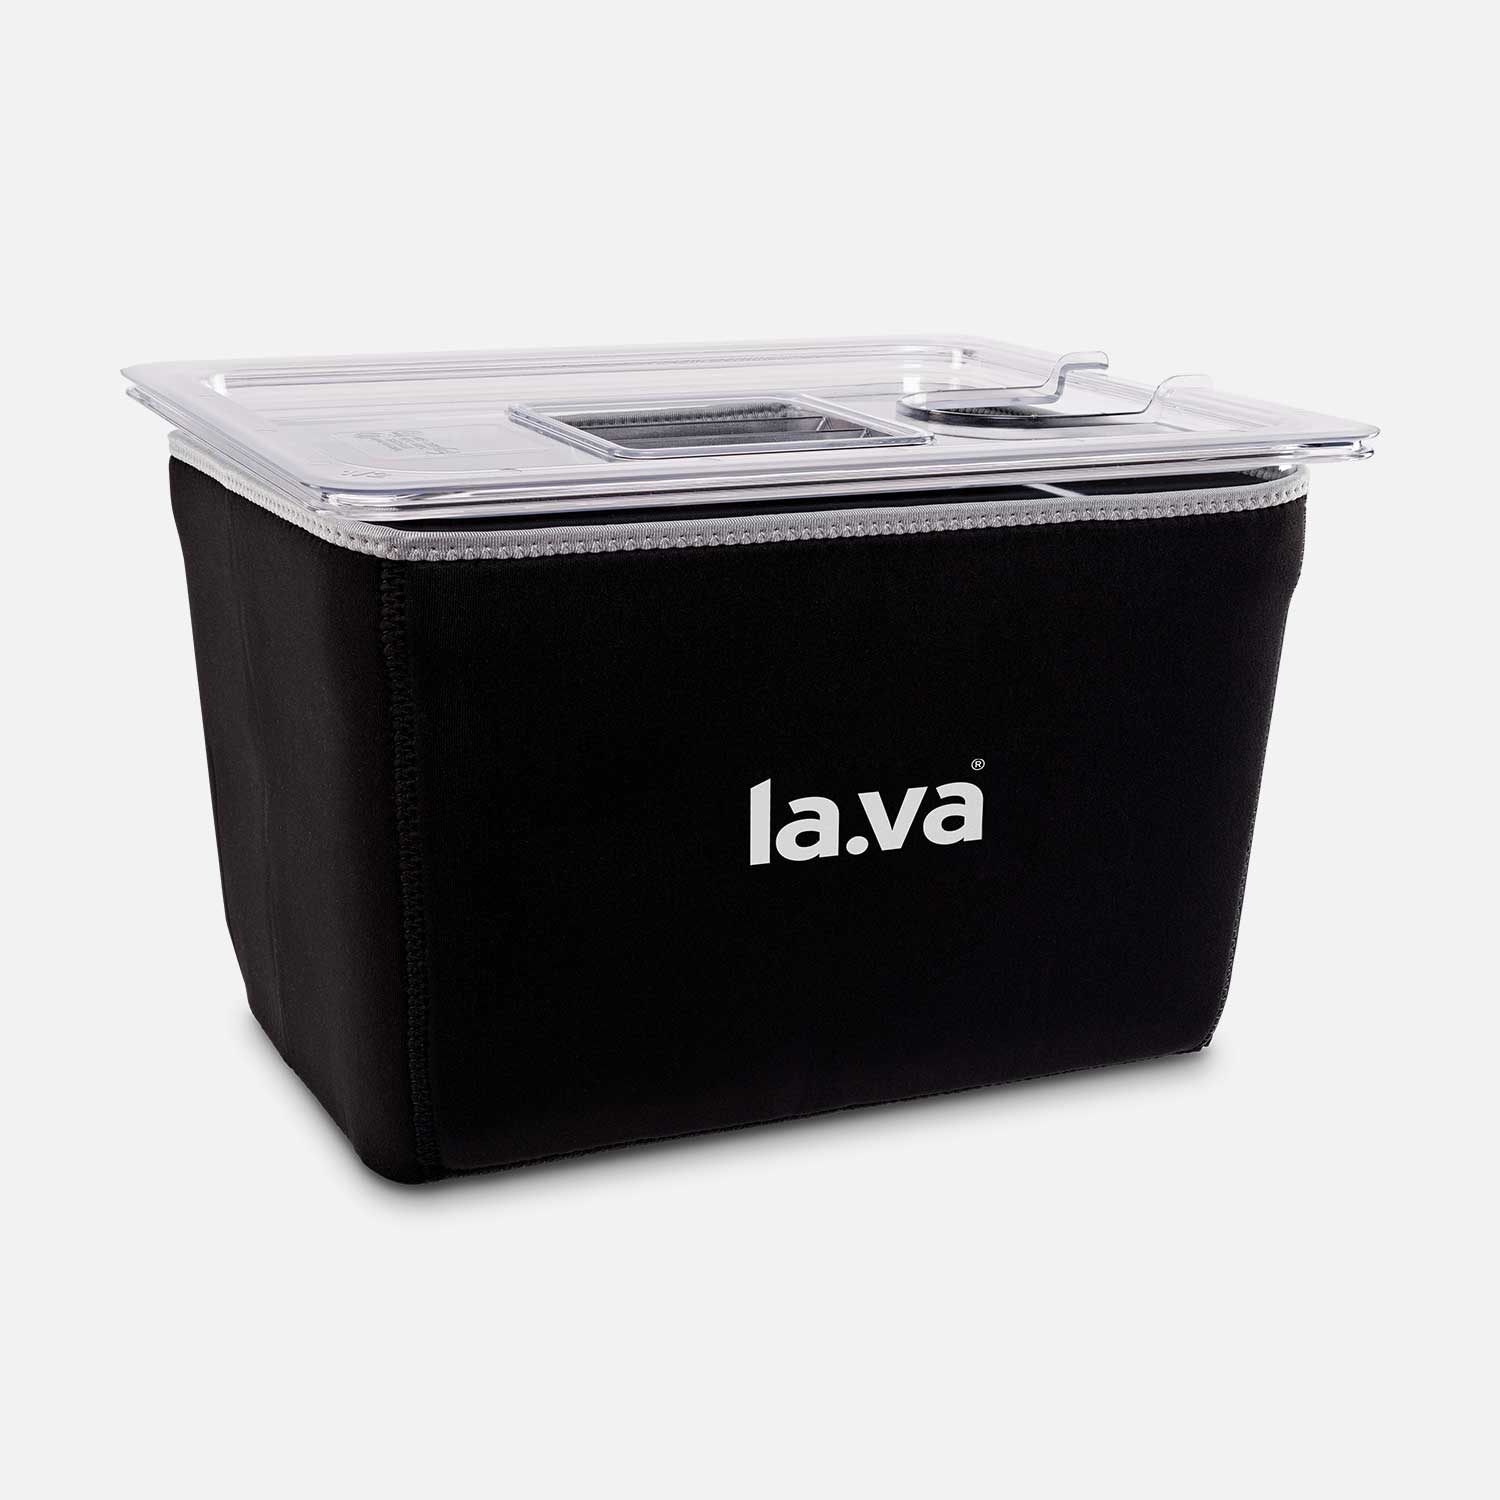 Black neoprene sous-vide insulation sleeve with Lava logo on the 12-liter basin